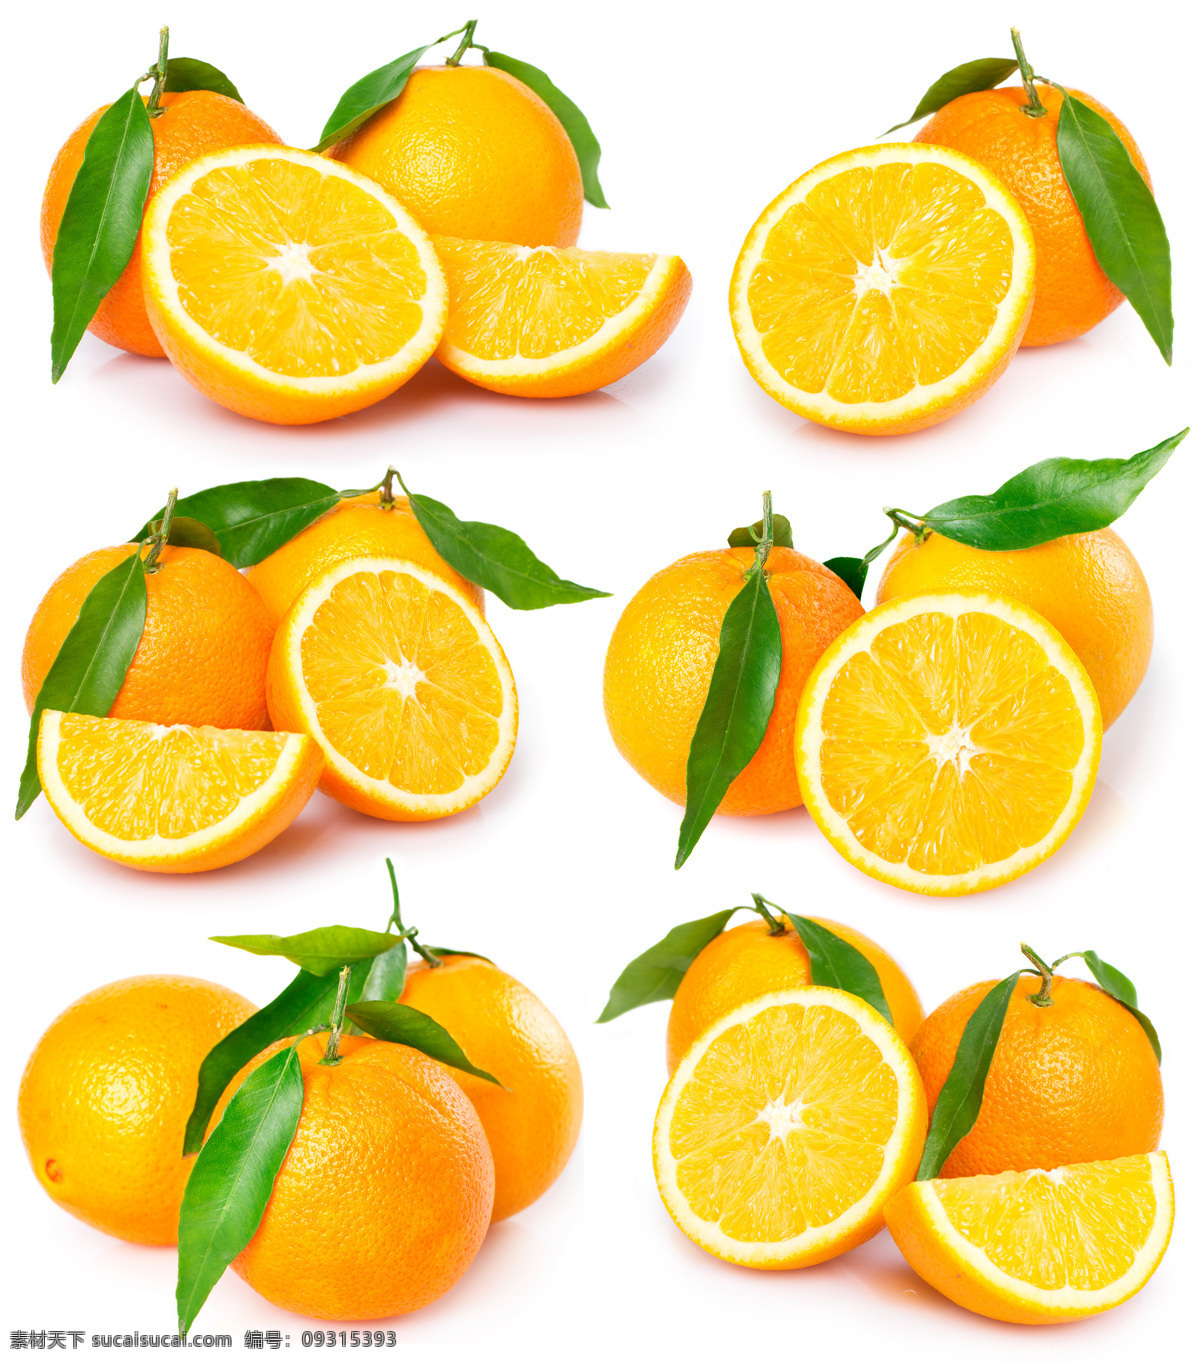 高清 橙子 橙子摄影 橙子素材 水果 水果摄影 水果广告 食物 蔬菜图片 餐饮美食